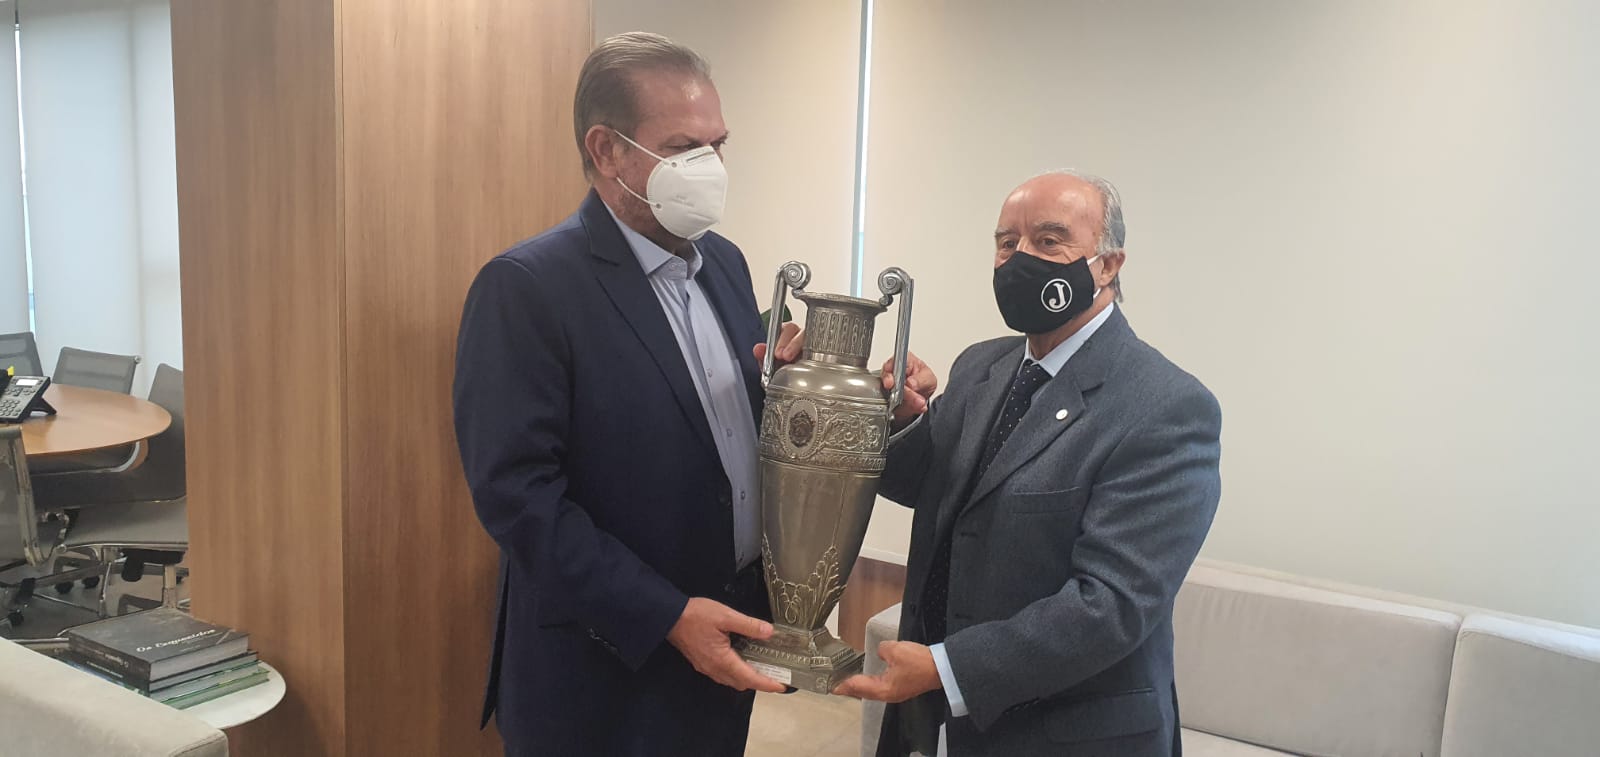 Juventus reconhecido como campeão paulista – Ipiranga News